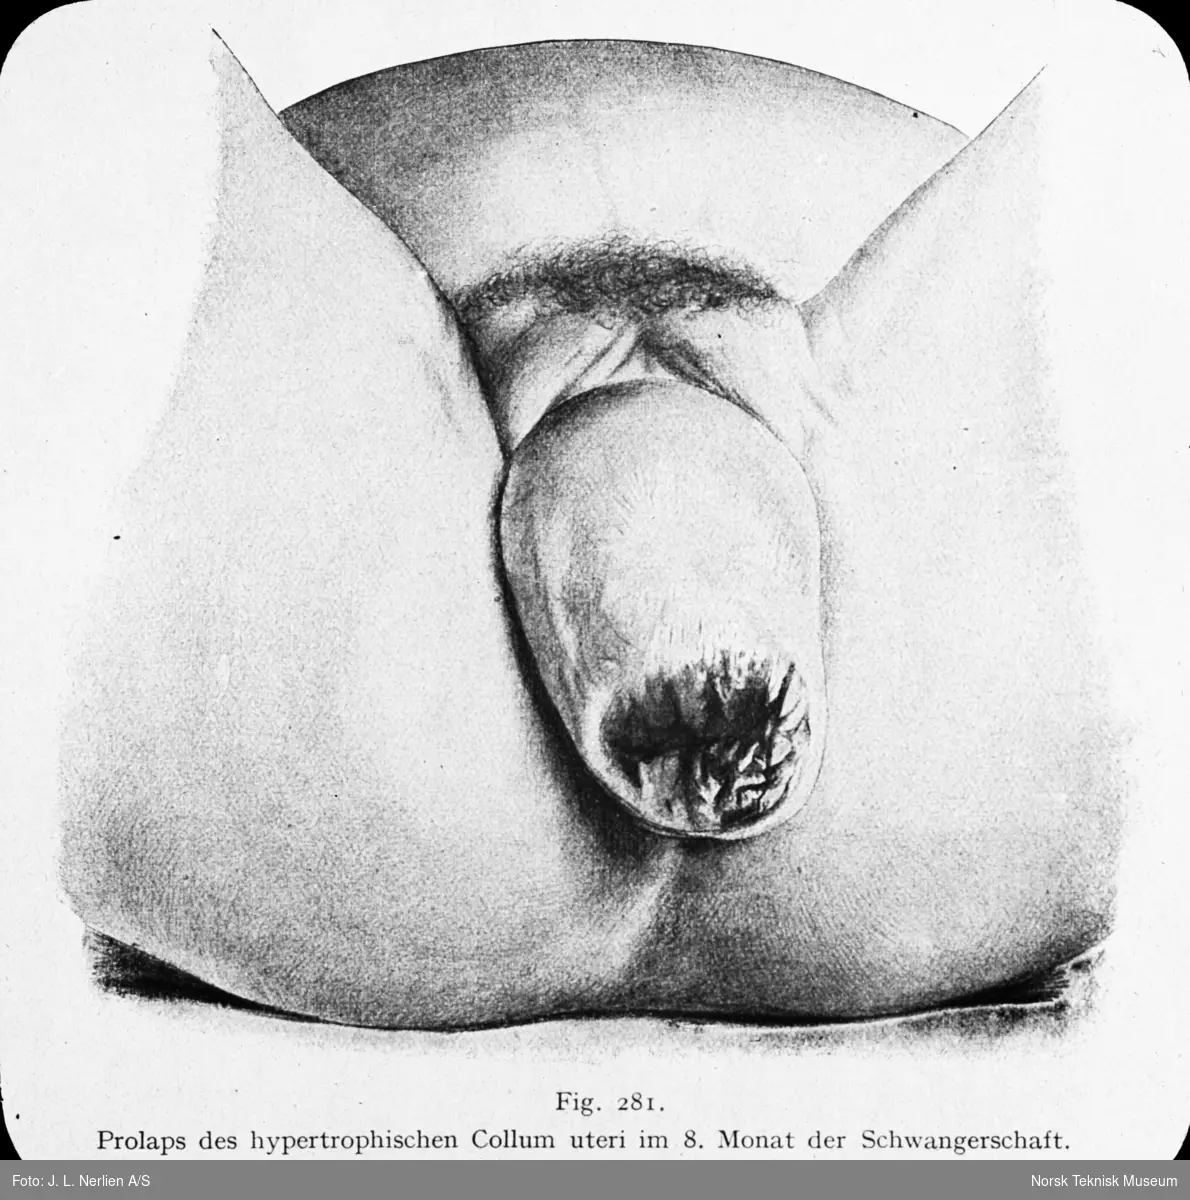 Avfotografert tegning av prolaps av kjønnsorganer, hypertrofisk collum uteri, i den 8. måned av svangerskapet